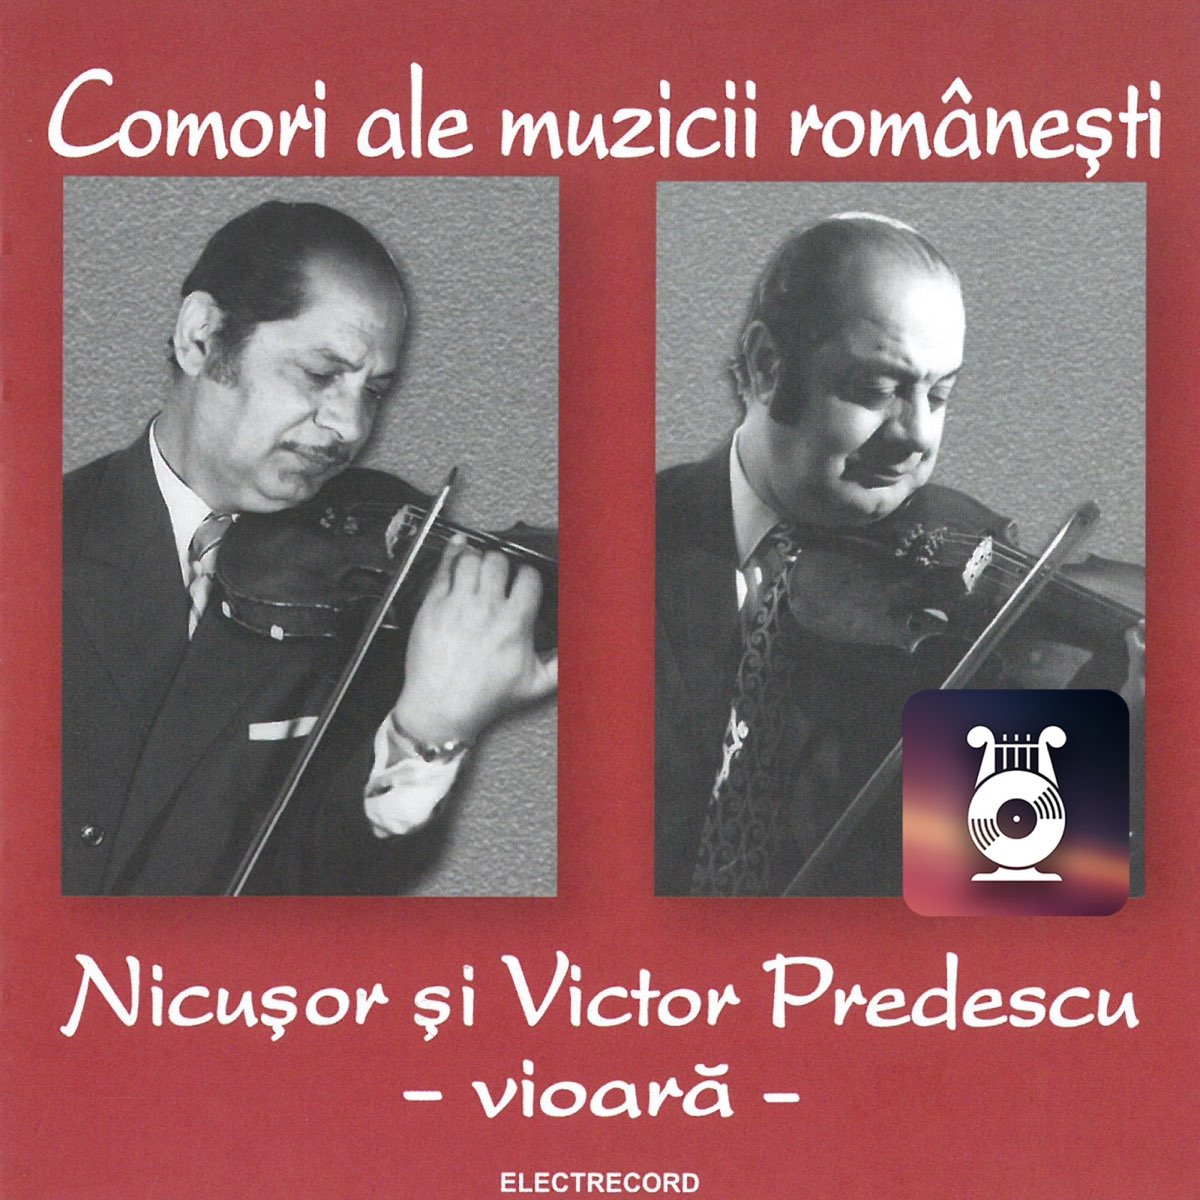 Nicușor și Victor Predescu (Vioară) by Nicușor și Victor Predescu on Apple  Music